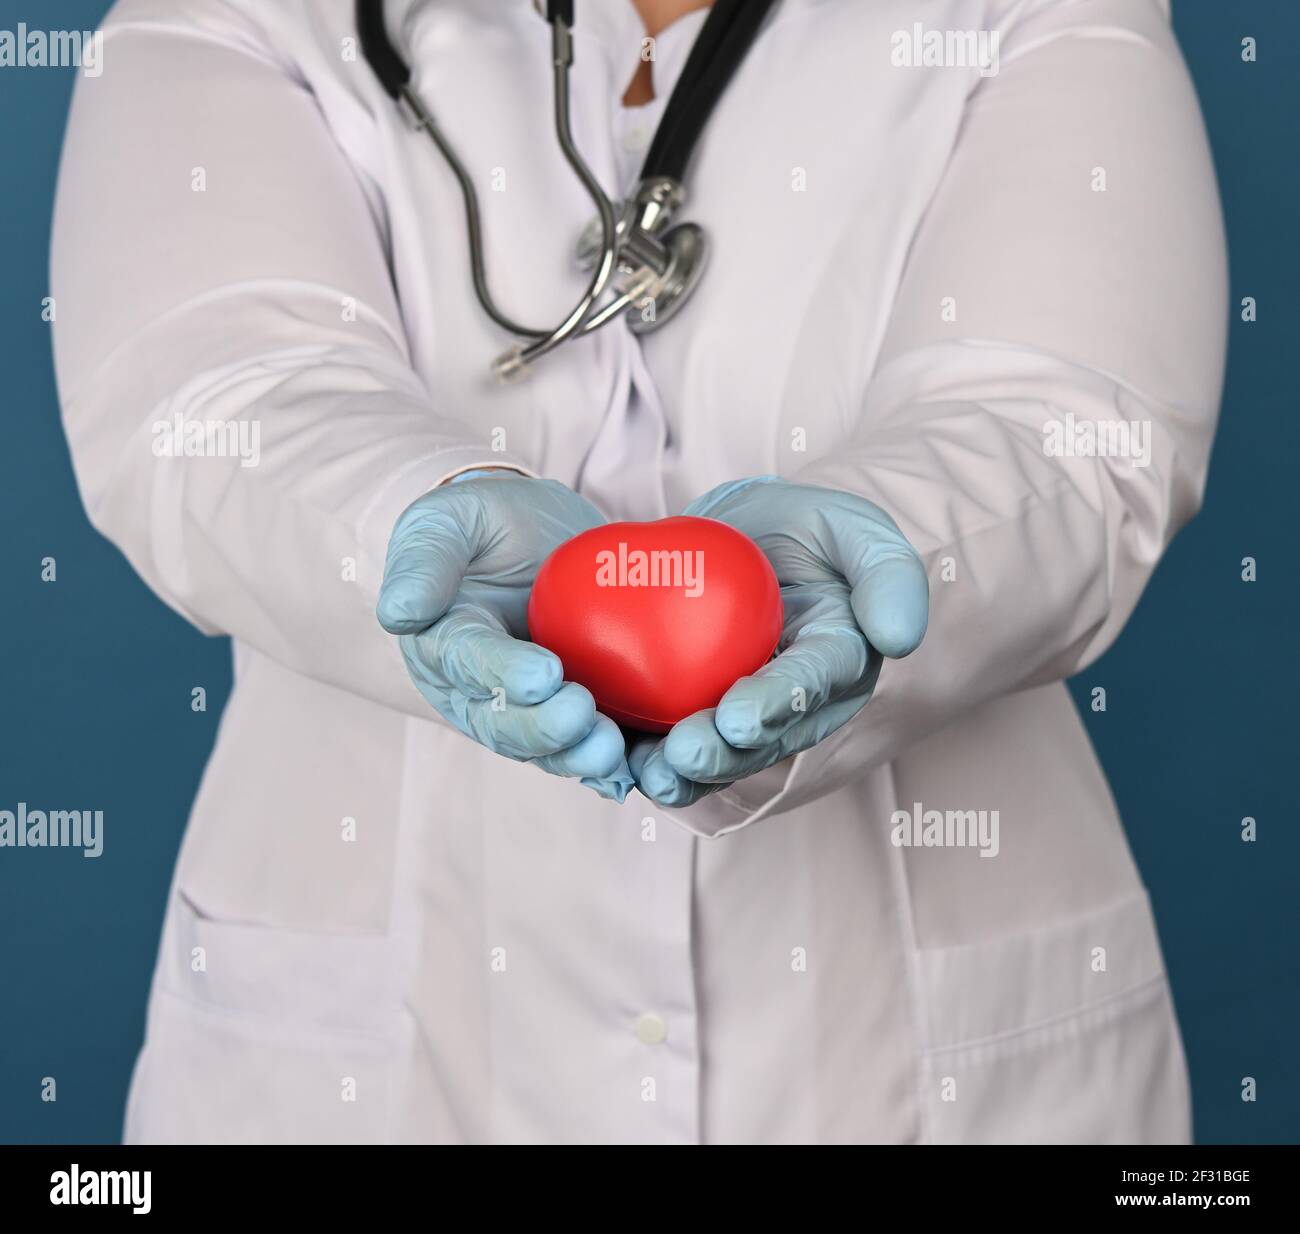 La femme médique sur un manteau blanc tient un coeur rouge sur fond bleu Banque D'Images